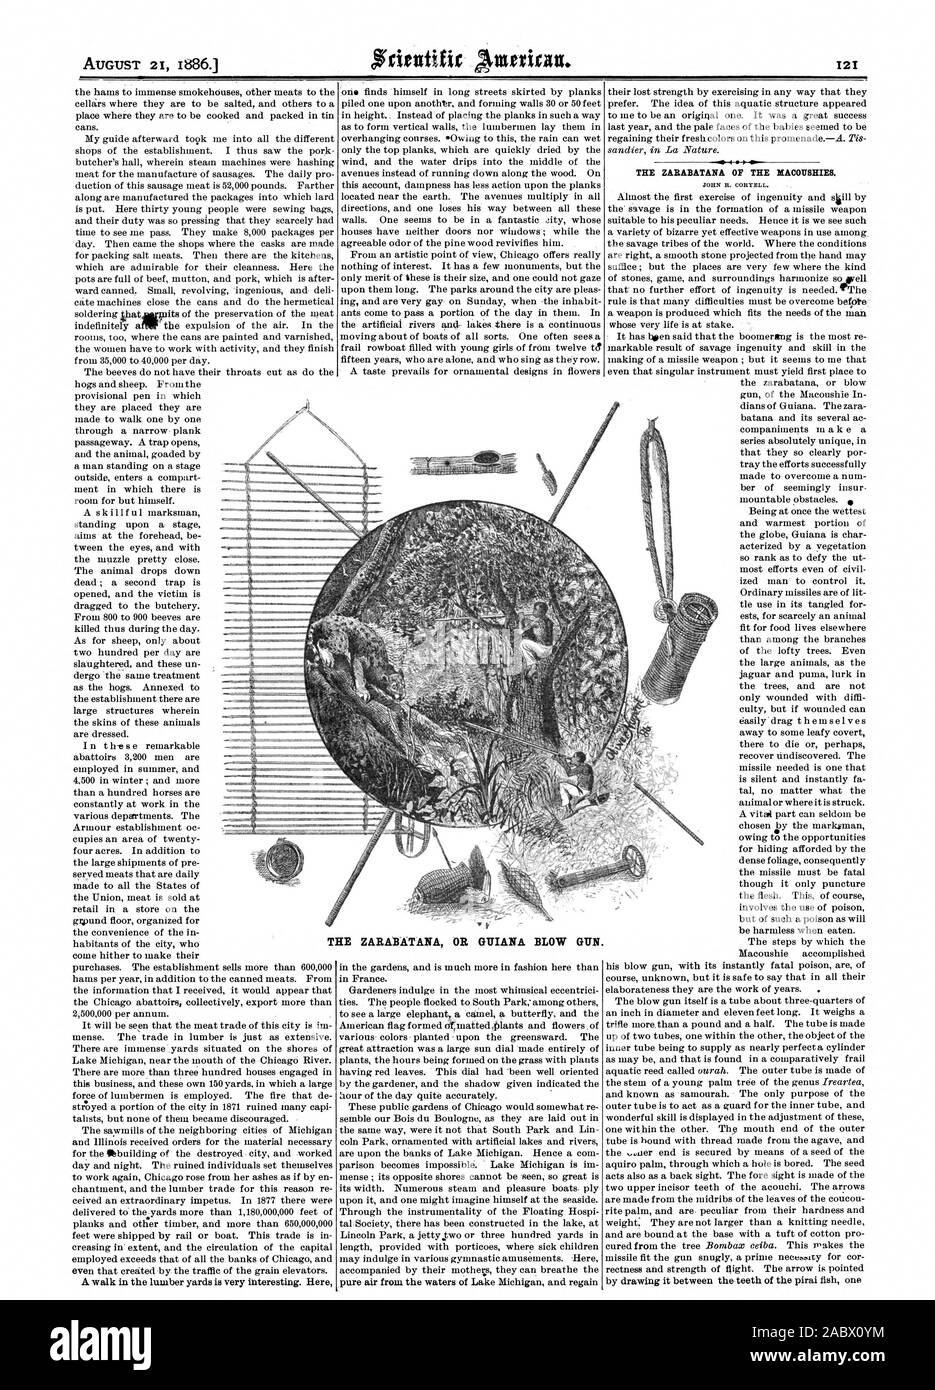 La ZABABATANA DEL MA008E1E8. La ZARABATANA o pistola de Guayana., Scientific American, 1886-08-21 Foto de stock